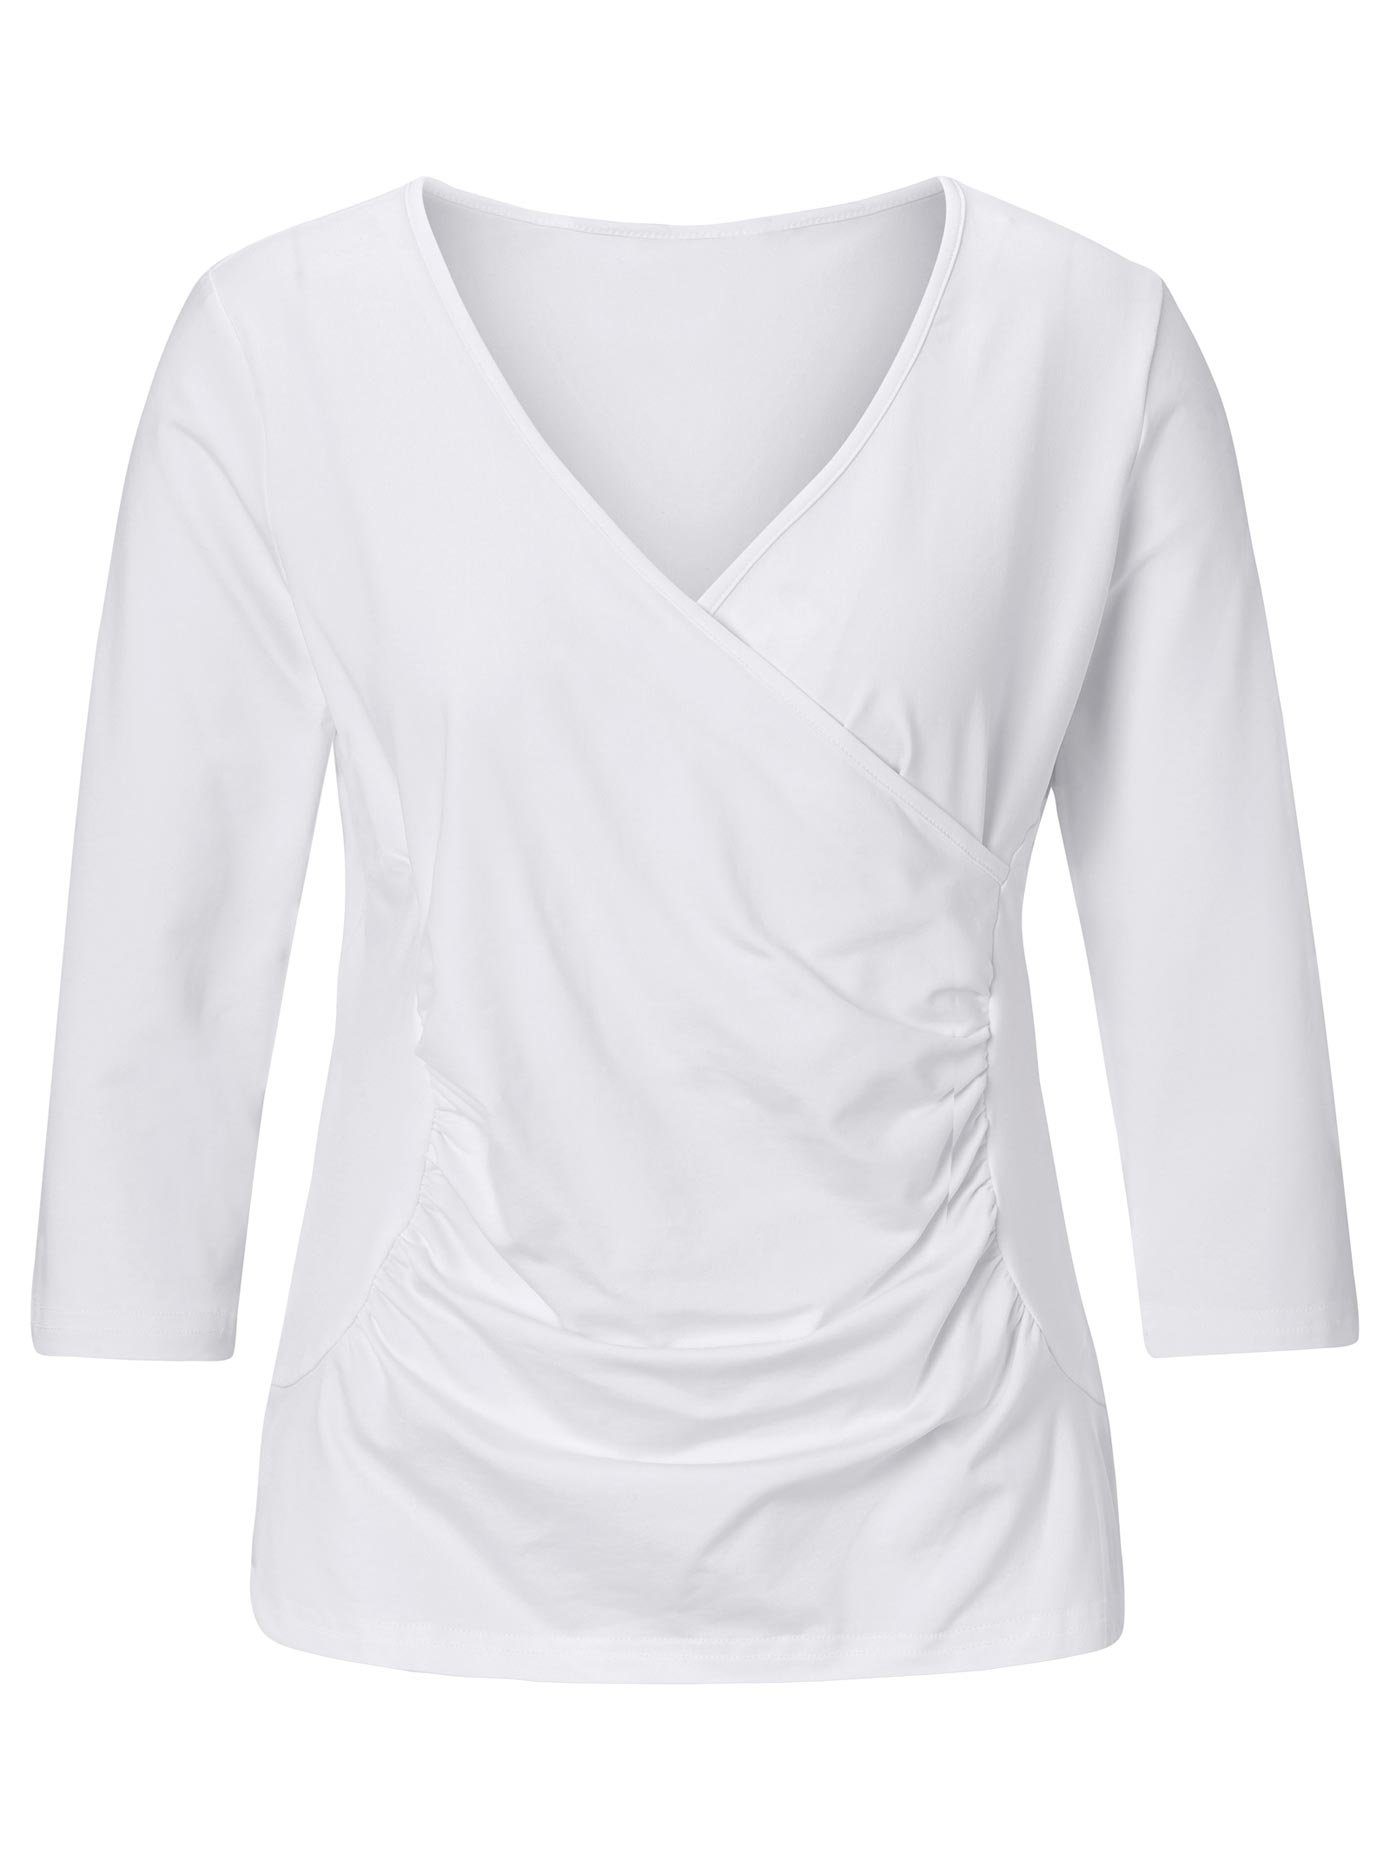 Moderniseren Op de grond moeilijk tevreden te krijgen Lady Wikkelshirt Shirt (1-delig) in de online winkel | OTTO